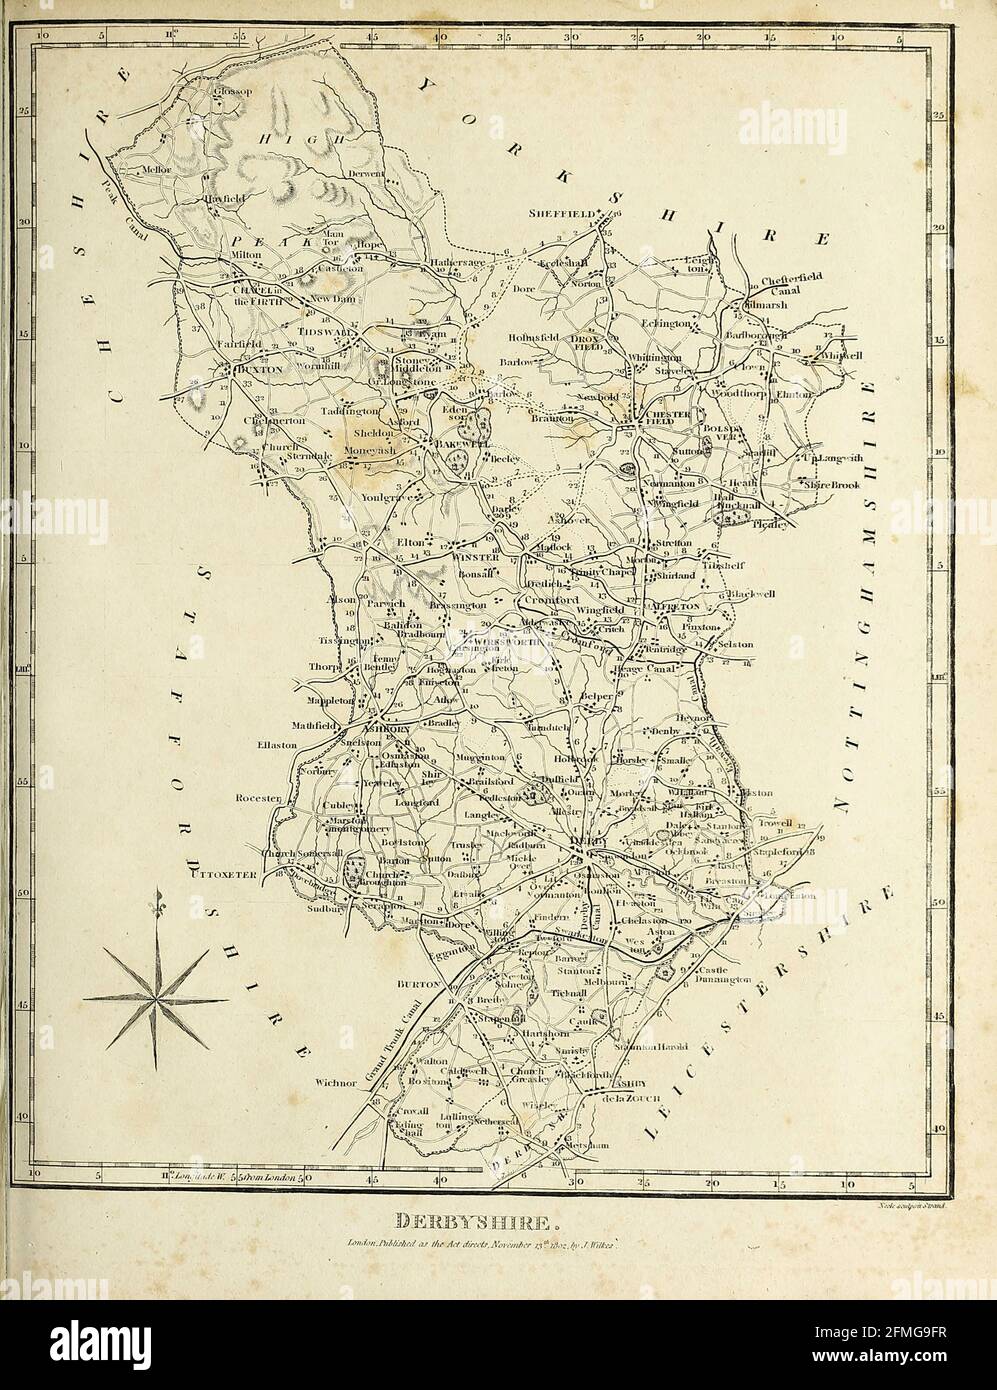 Derbyshire est un comté dans les Midlands de l'est de l'Angleterre. Une grande partie du parc national de Peak District se trouve dans le Derbyshire, contenant l'extrémité sud de la gamme de collines de Pennine, qui s'étend au nord du comté. Elle contient une partie de la forêt nationale et borde la grande région de Manchester au nord-ouest, le West Yorkshire au nord, le South Yorkshire au nord-est, le Notinghamshire à l'est, le Leicestershire au sud-est, le Staffordshire à l'ouest et au sud-ouest et le Cheshire également à l'ouest. Kinder Scout, gravure de Copperplate de l'Encyclopedia Londinensis or, Université Banque D'Images